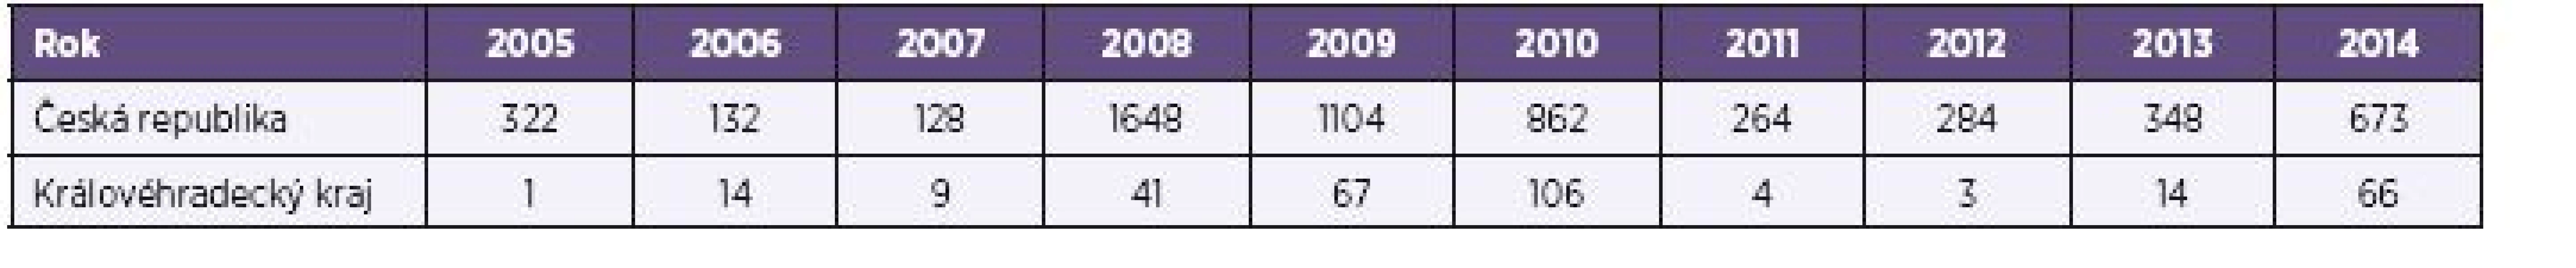 Počet případů VHA v České republice a Královéhradeckém kraji v letech 2005–2014
Table 1. VHA cases in the Czech Republic and Hradec Králové Region in 2005–2014